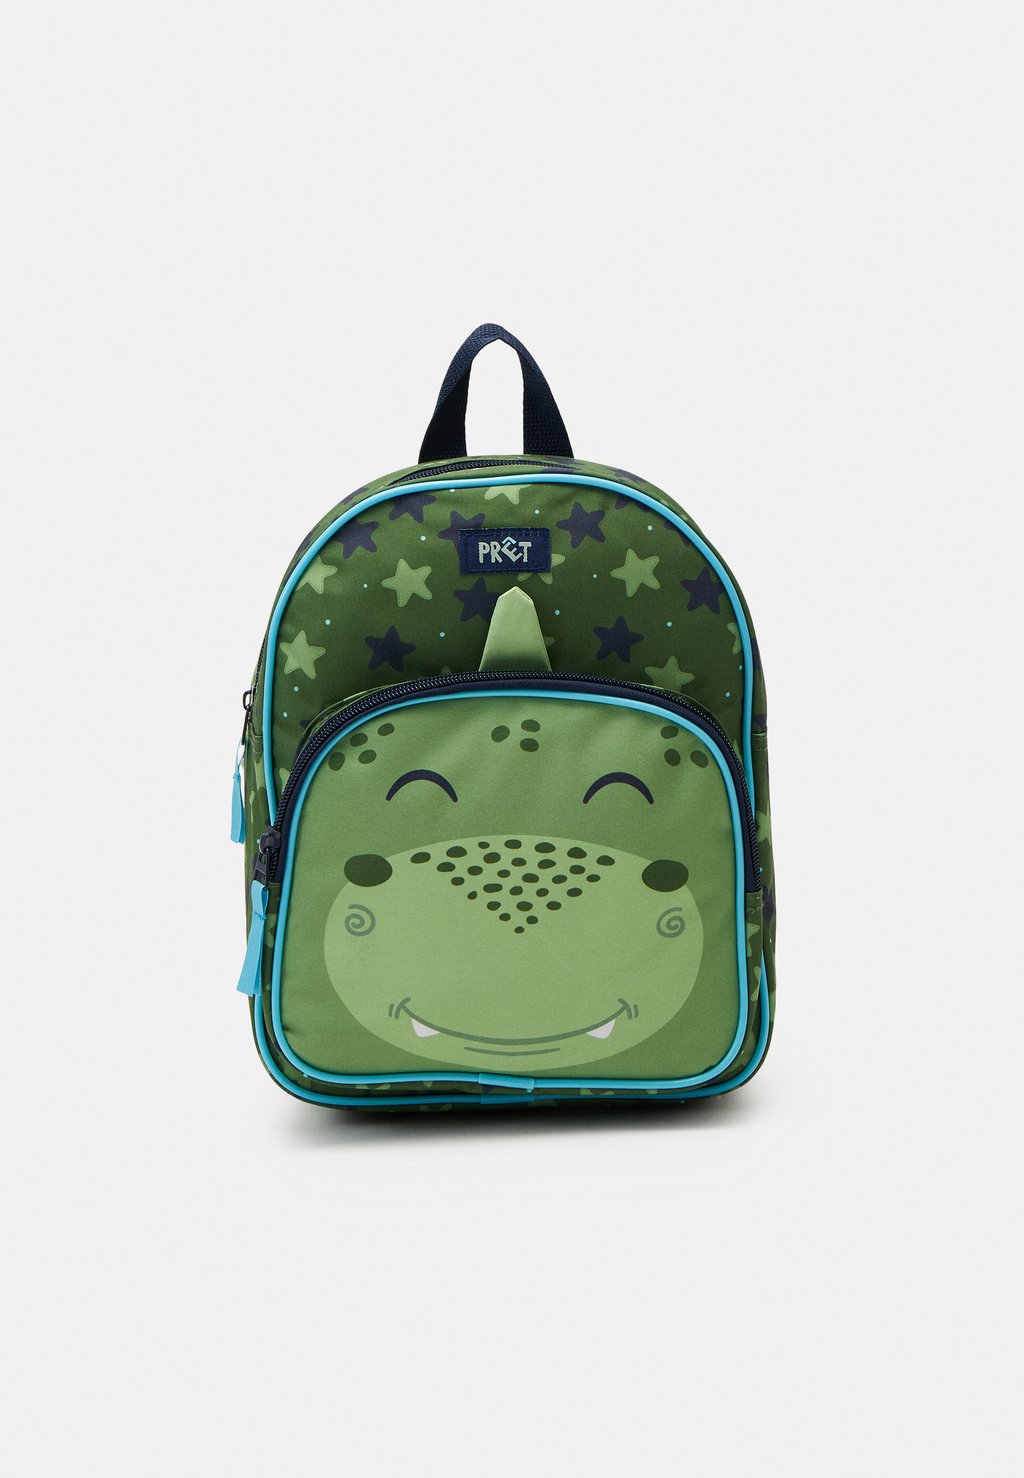 Рюкзак для путешествий Backpack Pret Giggle Unisex Kidzroom, зеленый рюкзак для путешествий backpack mio unisex molo цвет blue horses